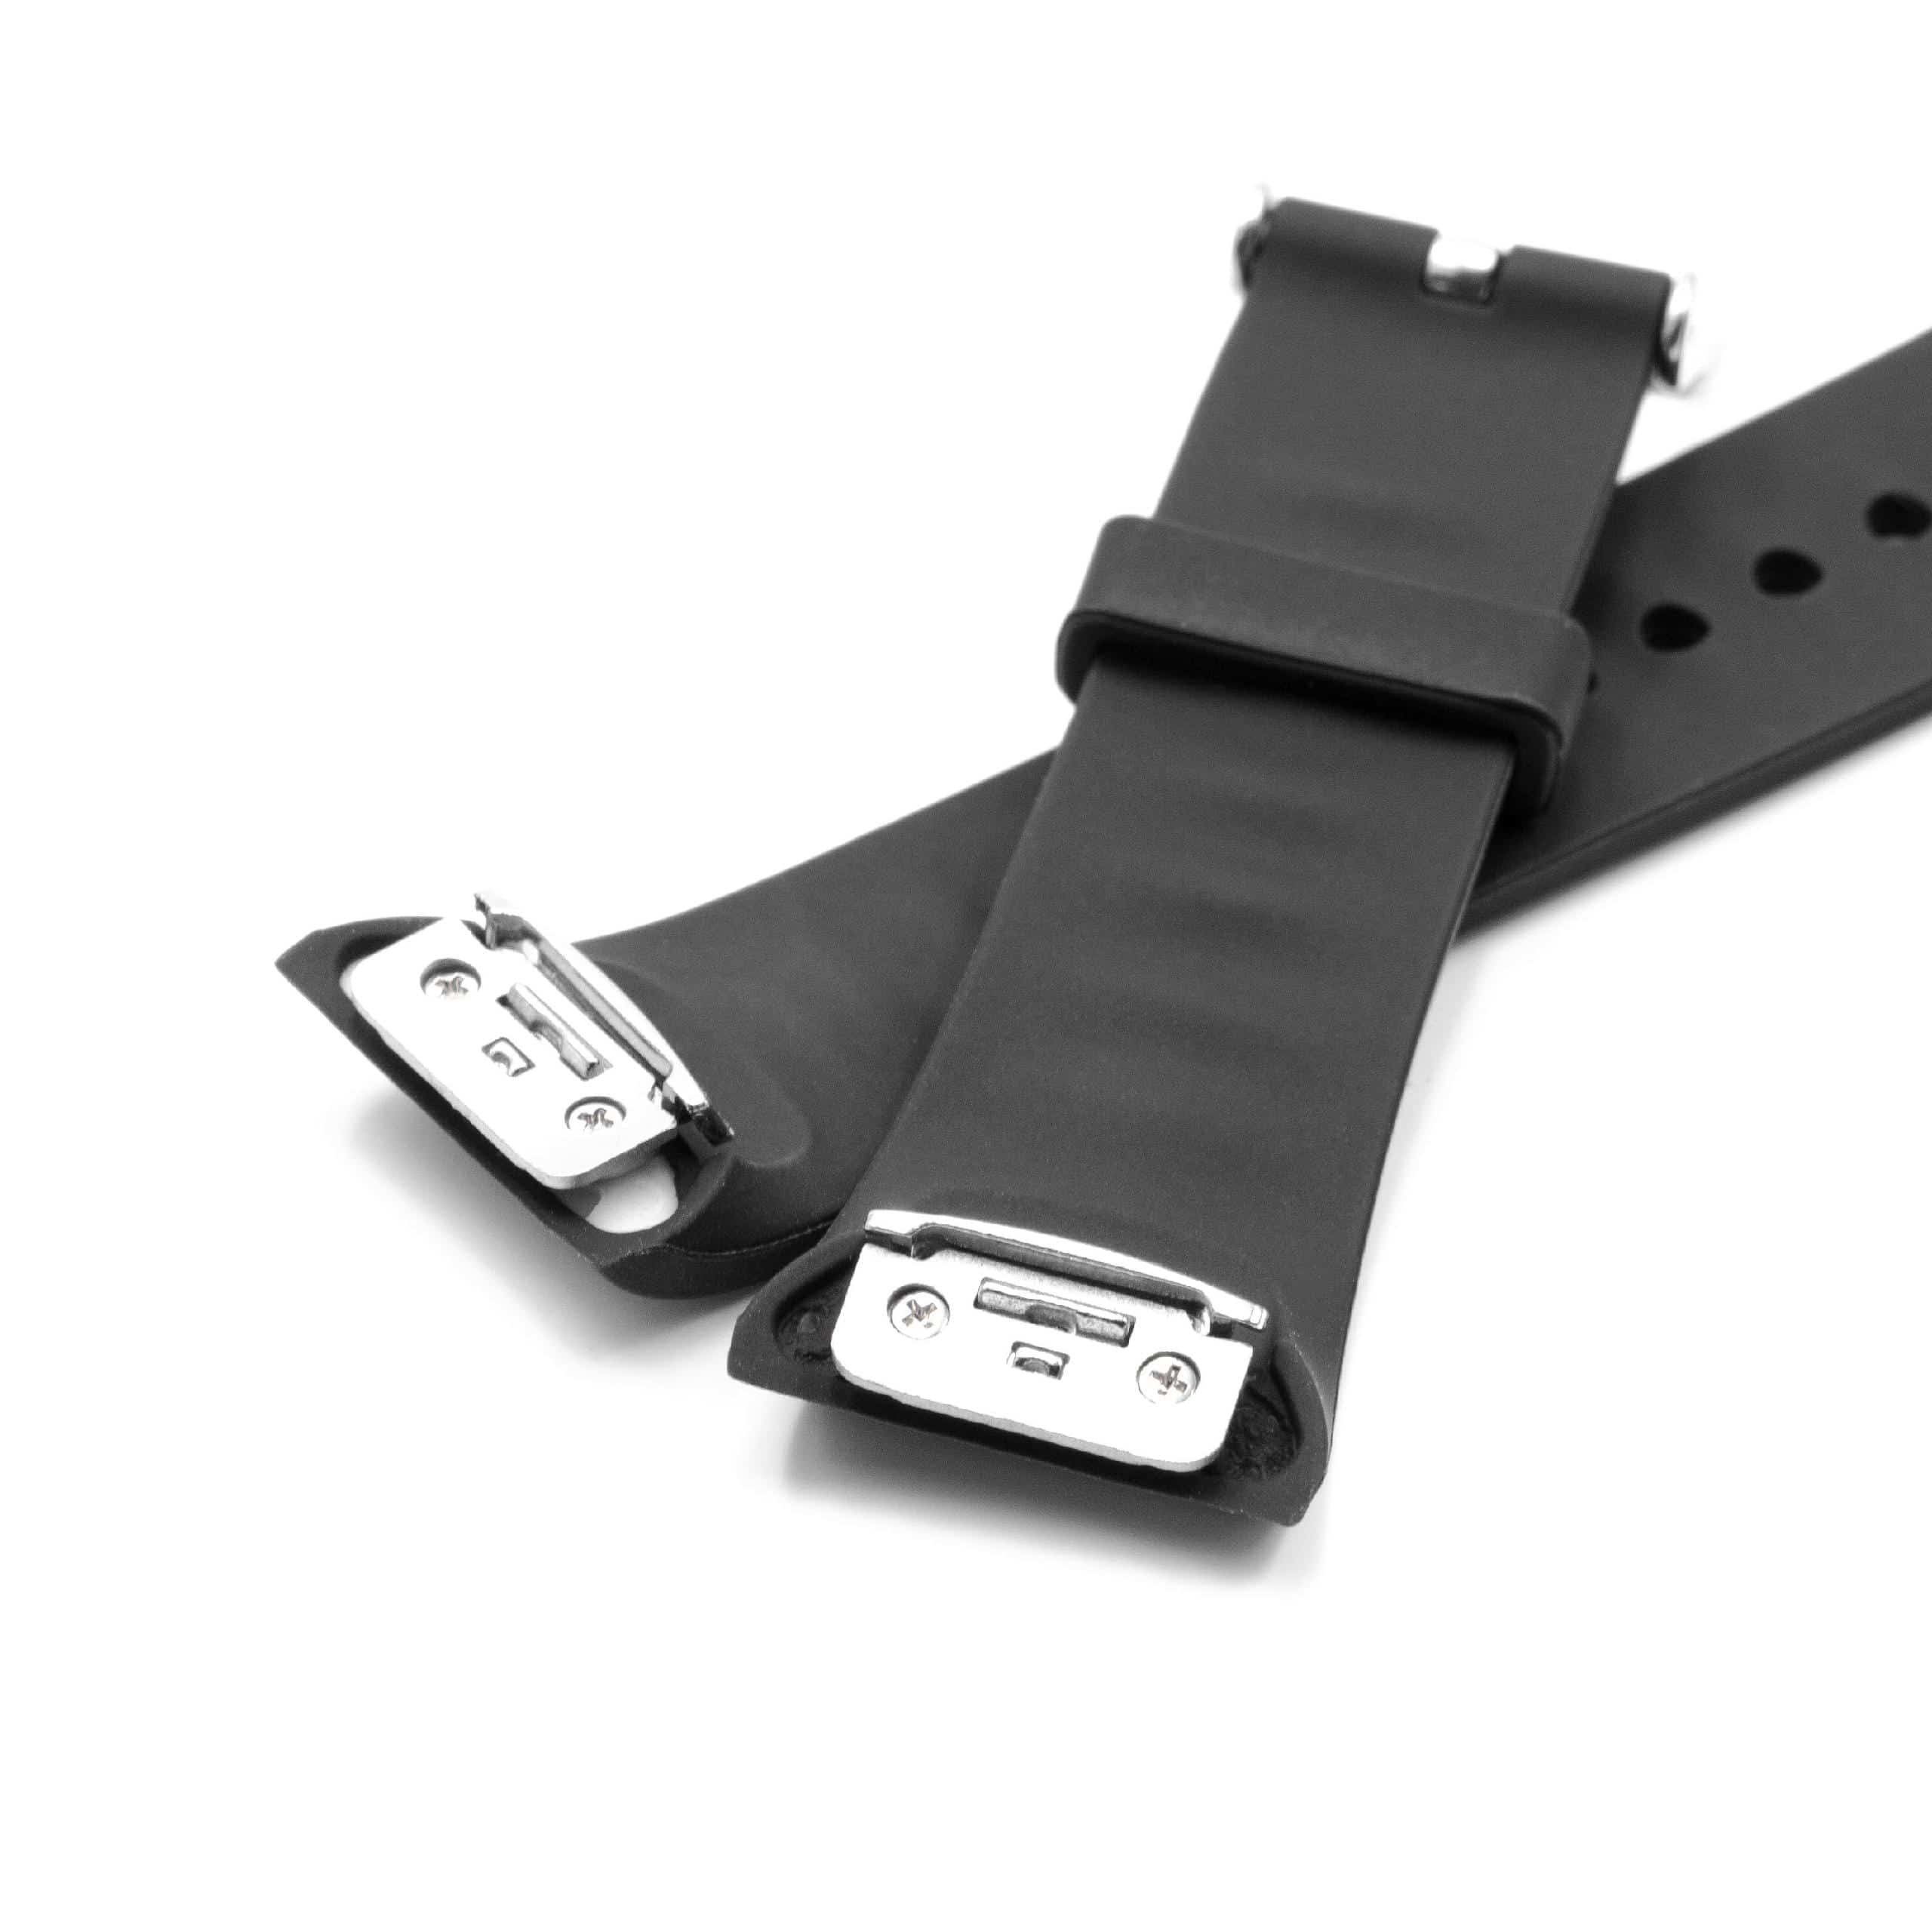 Pasek do smartwatch Samsung Gear - dł. 11,7 + 7,6 cm, szer. 18,5 mm, silikon, czarny